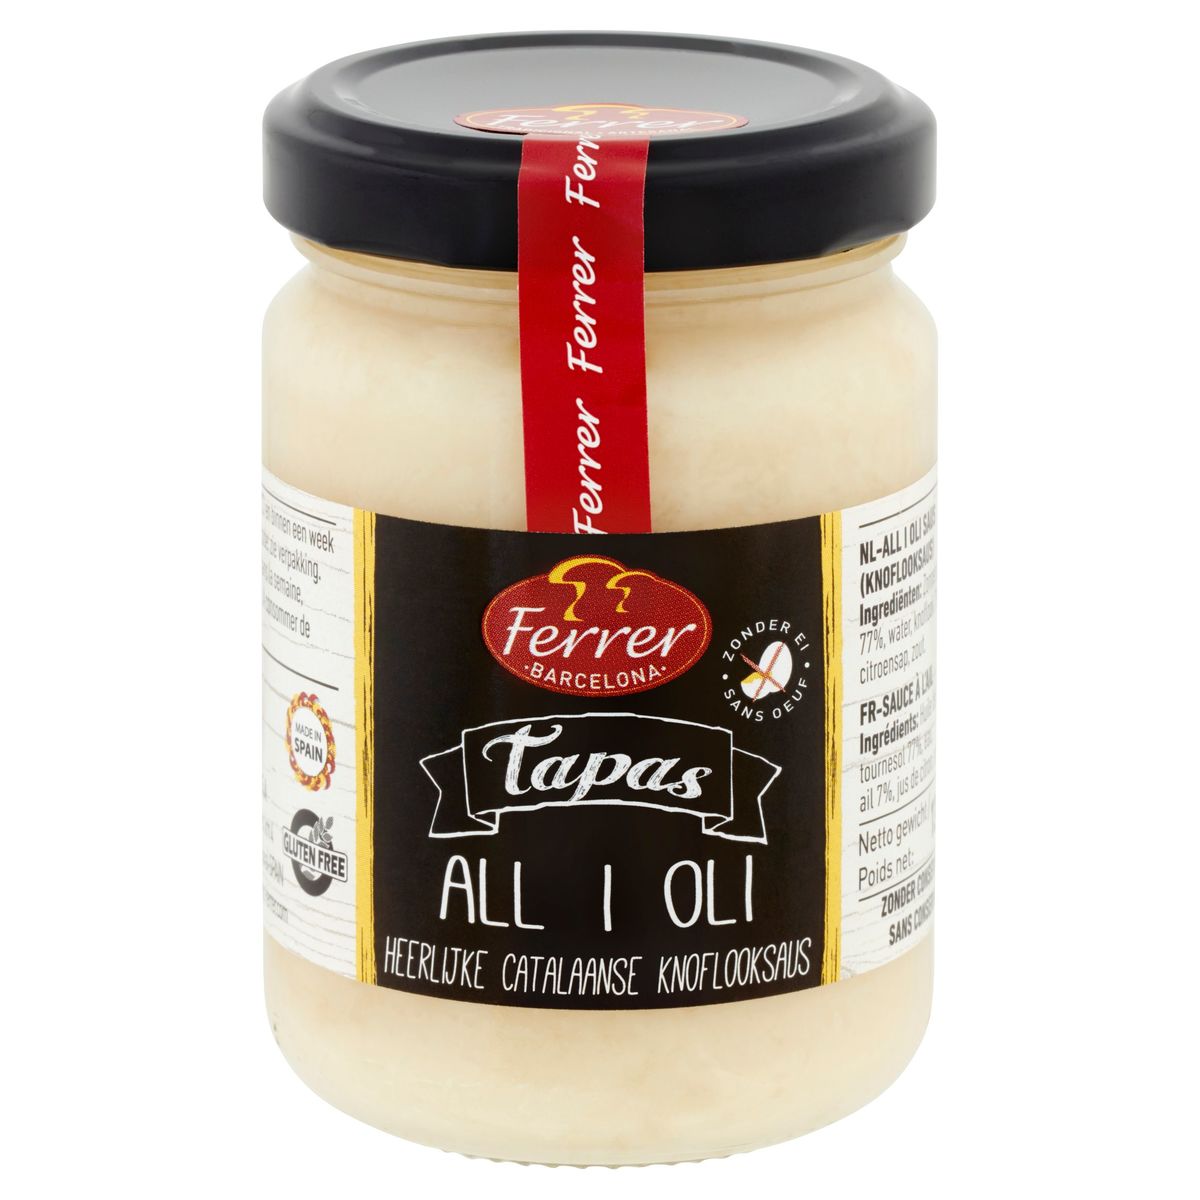 Ferrer Tapas All i Oli 130 g